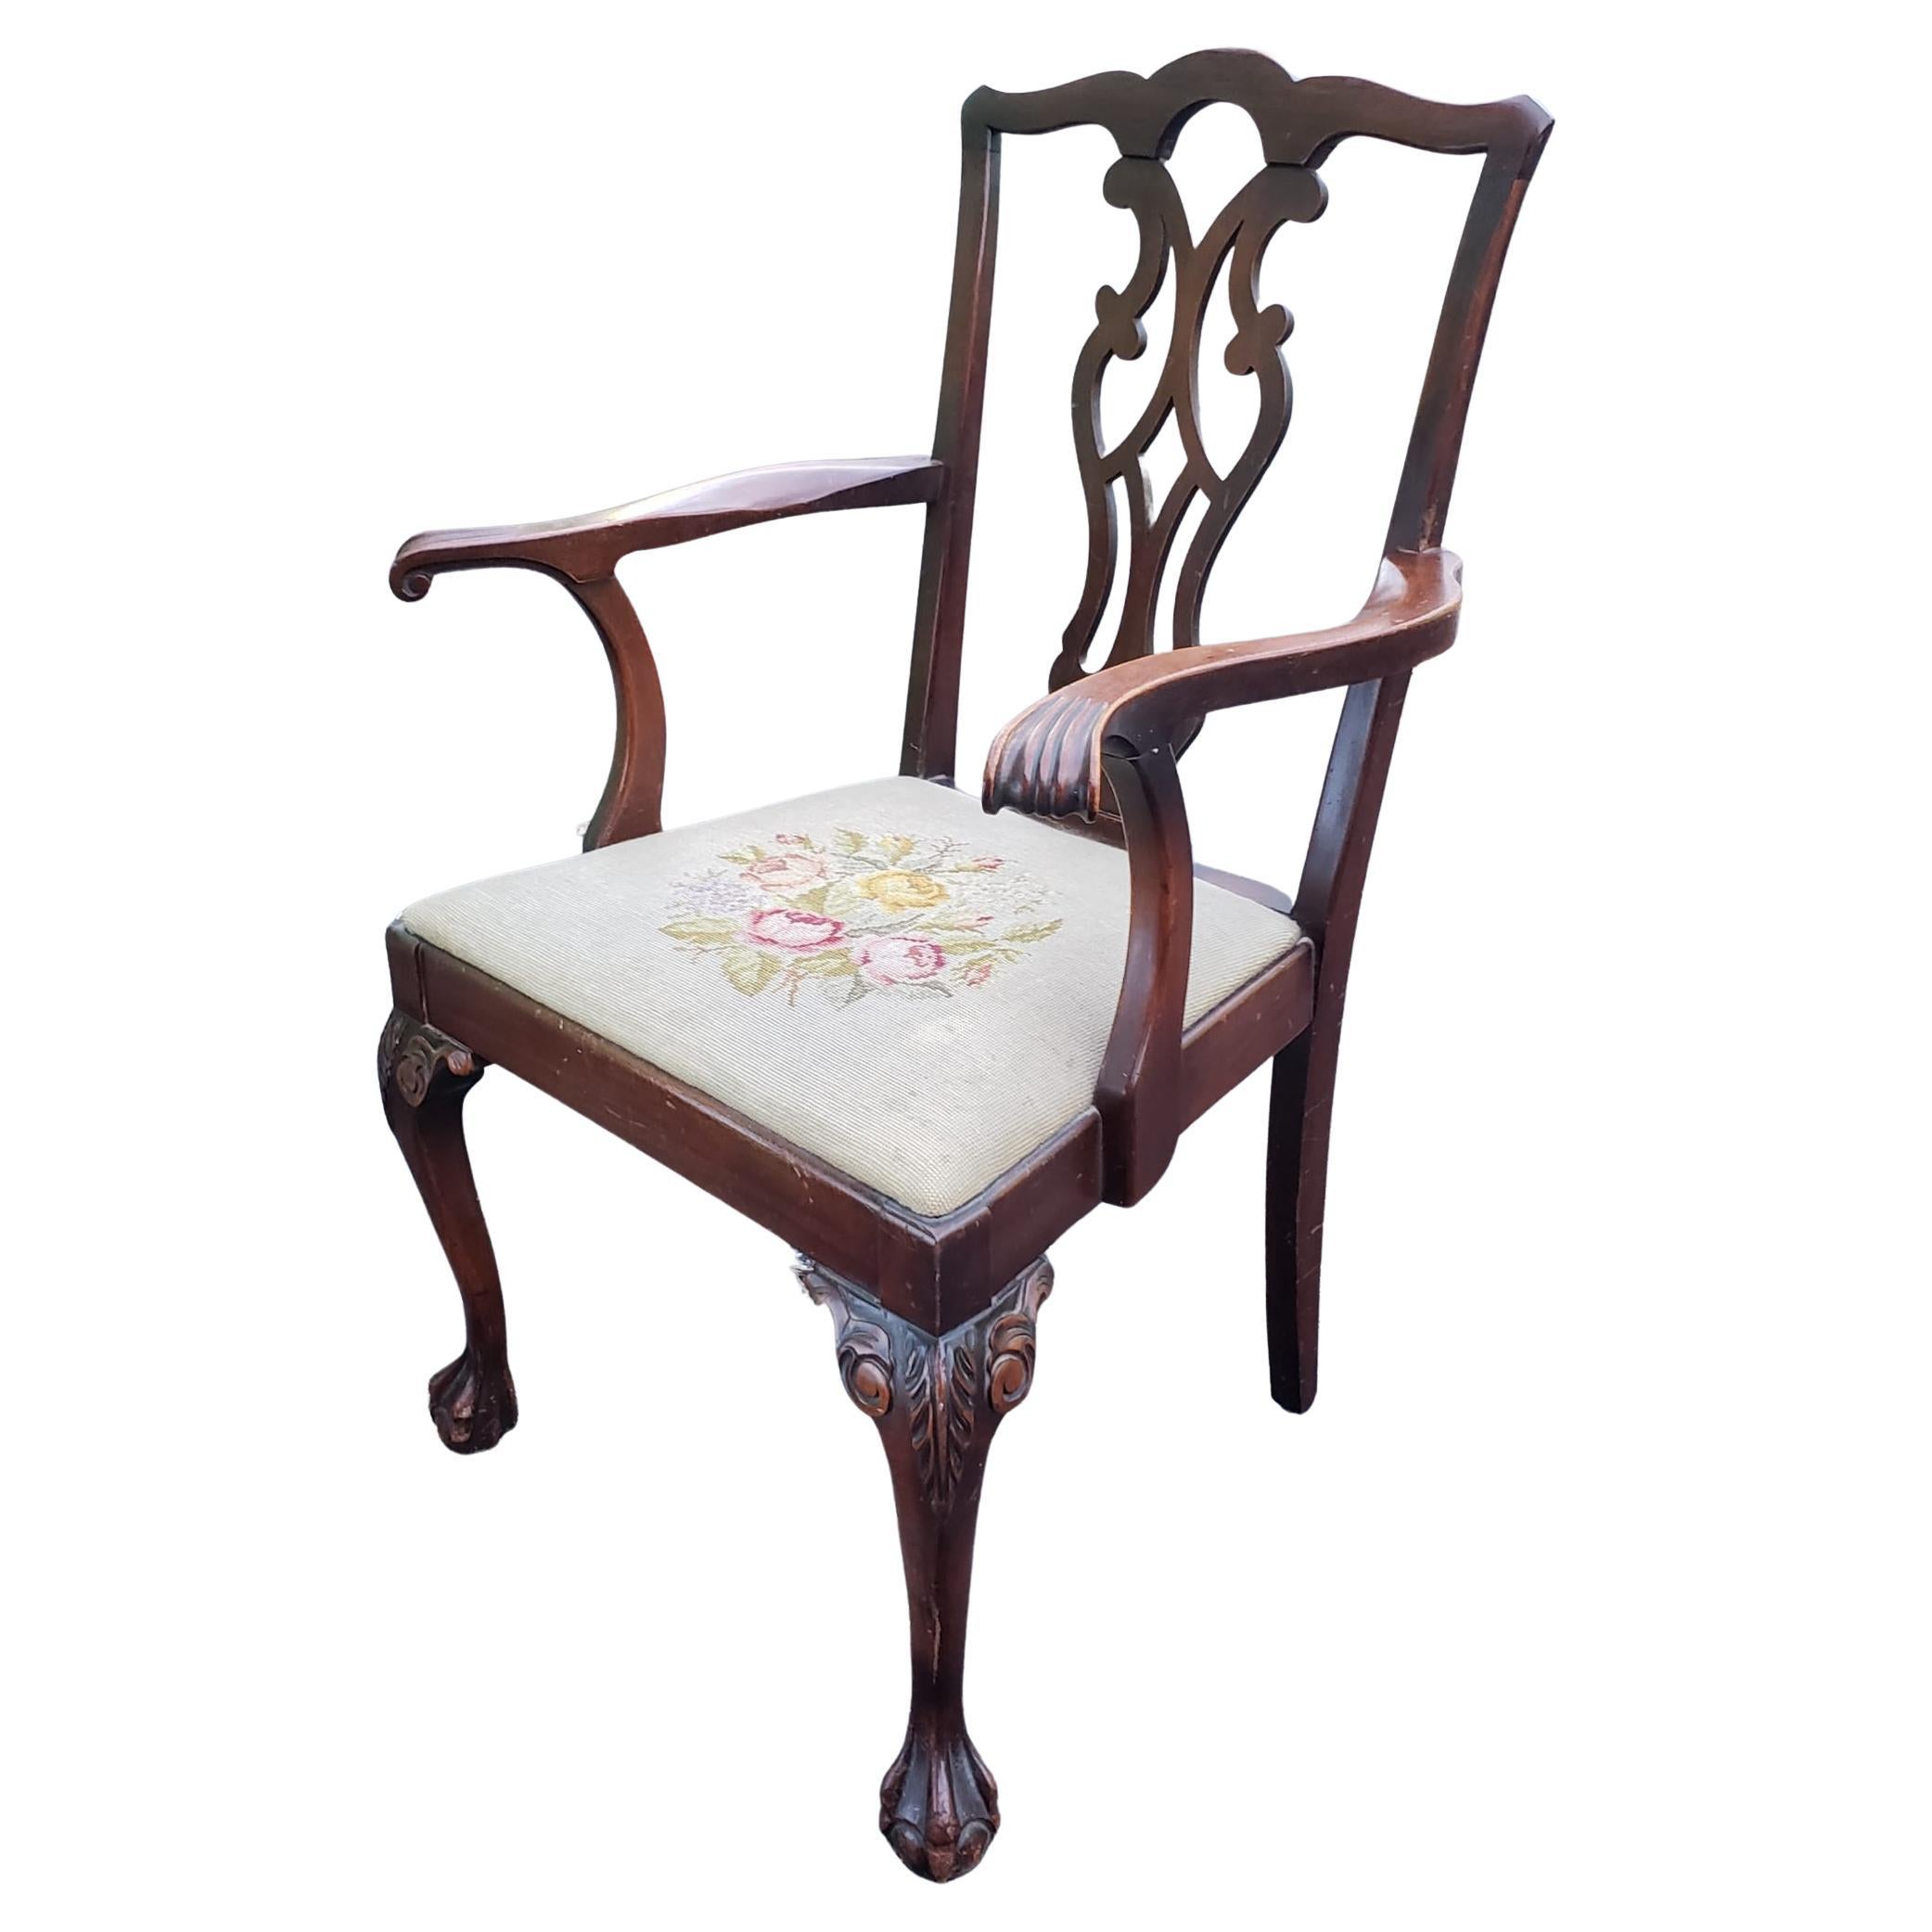 Spätes 19. Jahrhundert Chippendale Mahagoni Nadelspitze gepolsterter Sessel mit geschnitzten Cabriole Beine mit Kugel und Kralle Füße beendet. Maße: 26